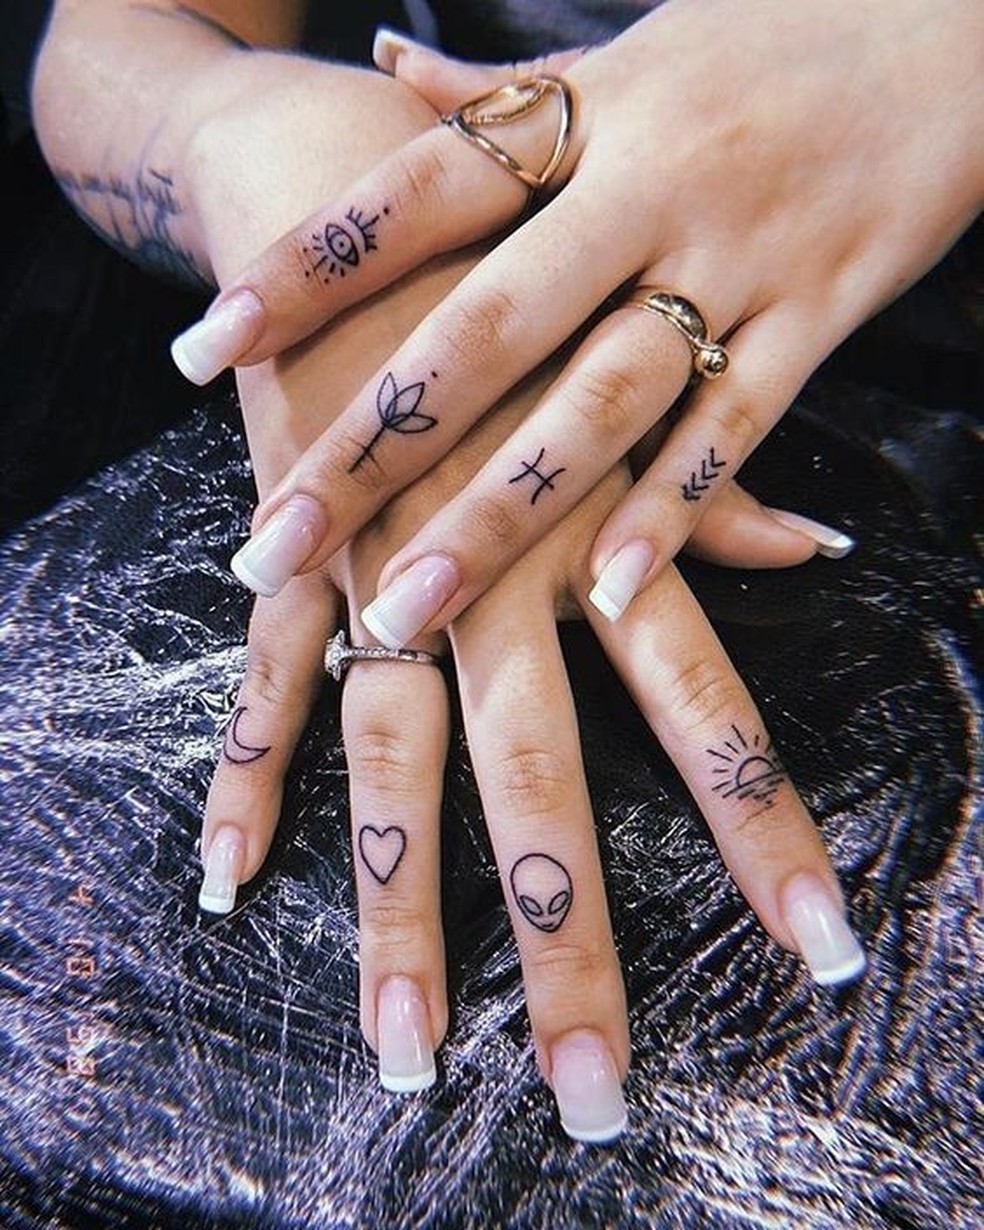 Inspire-se em tatuagens feitas nos dedos e mãos